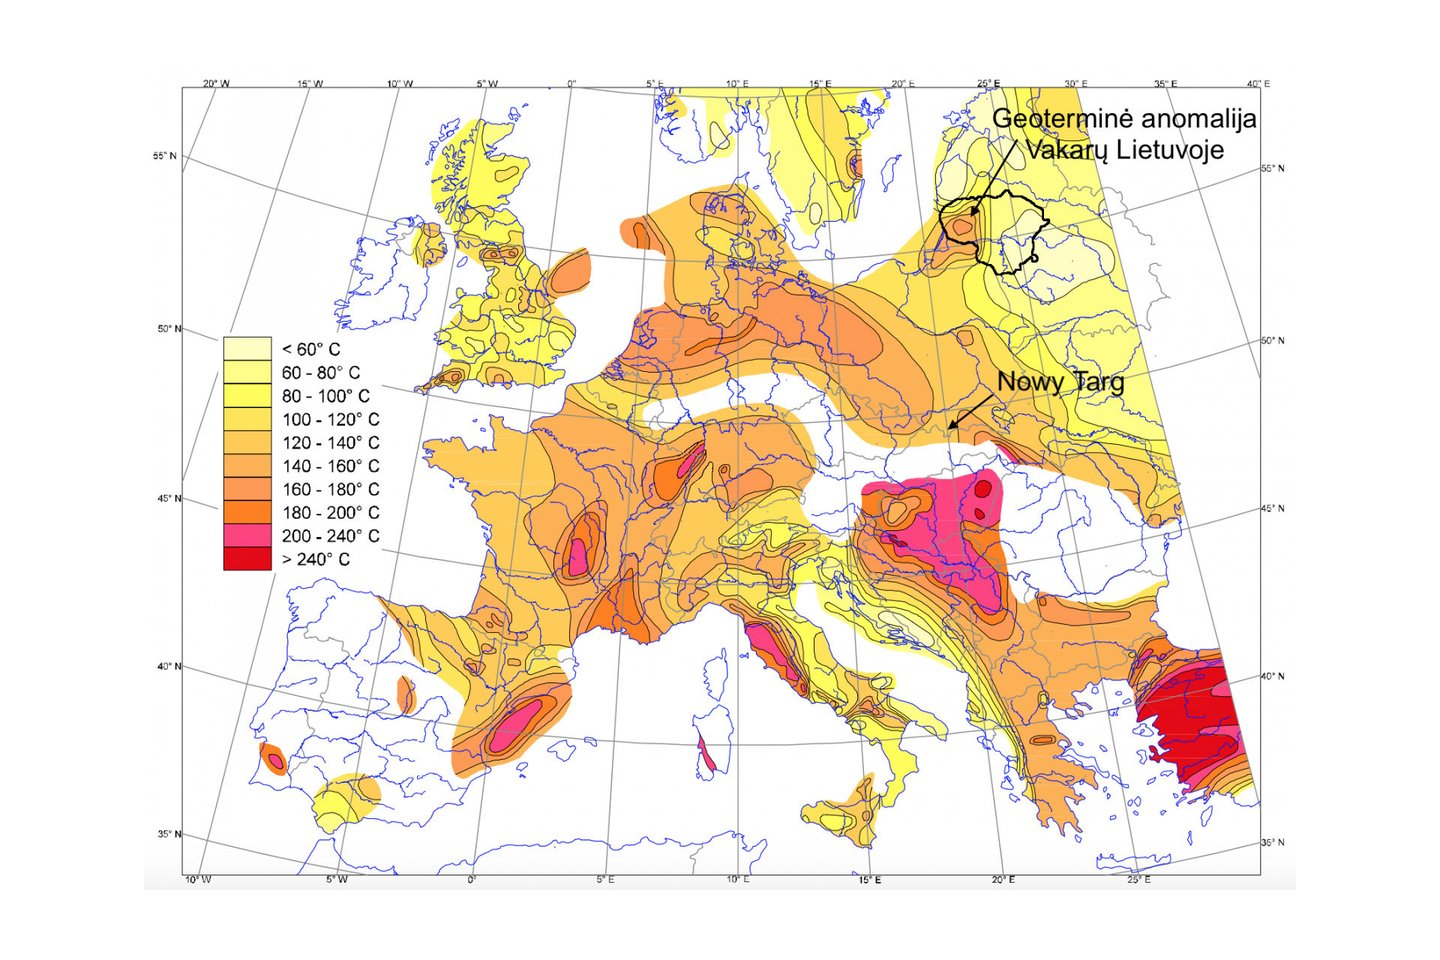 Europos žemėlapis, rodantis temperatūrą 5 km gylyje (iš Hurtig ir kt., 1992). Atkreipkite dėmesį į geoterminę anomaliją Vakarų Lietuvoje bei Nowy Targ padėtį, kur bus gręžiamas 7 km geoterminis gręžinys – ten šilumos srautas panašus į esantį Vakarų Lietuvoje.